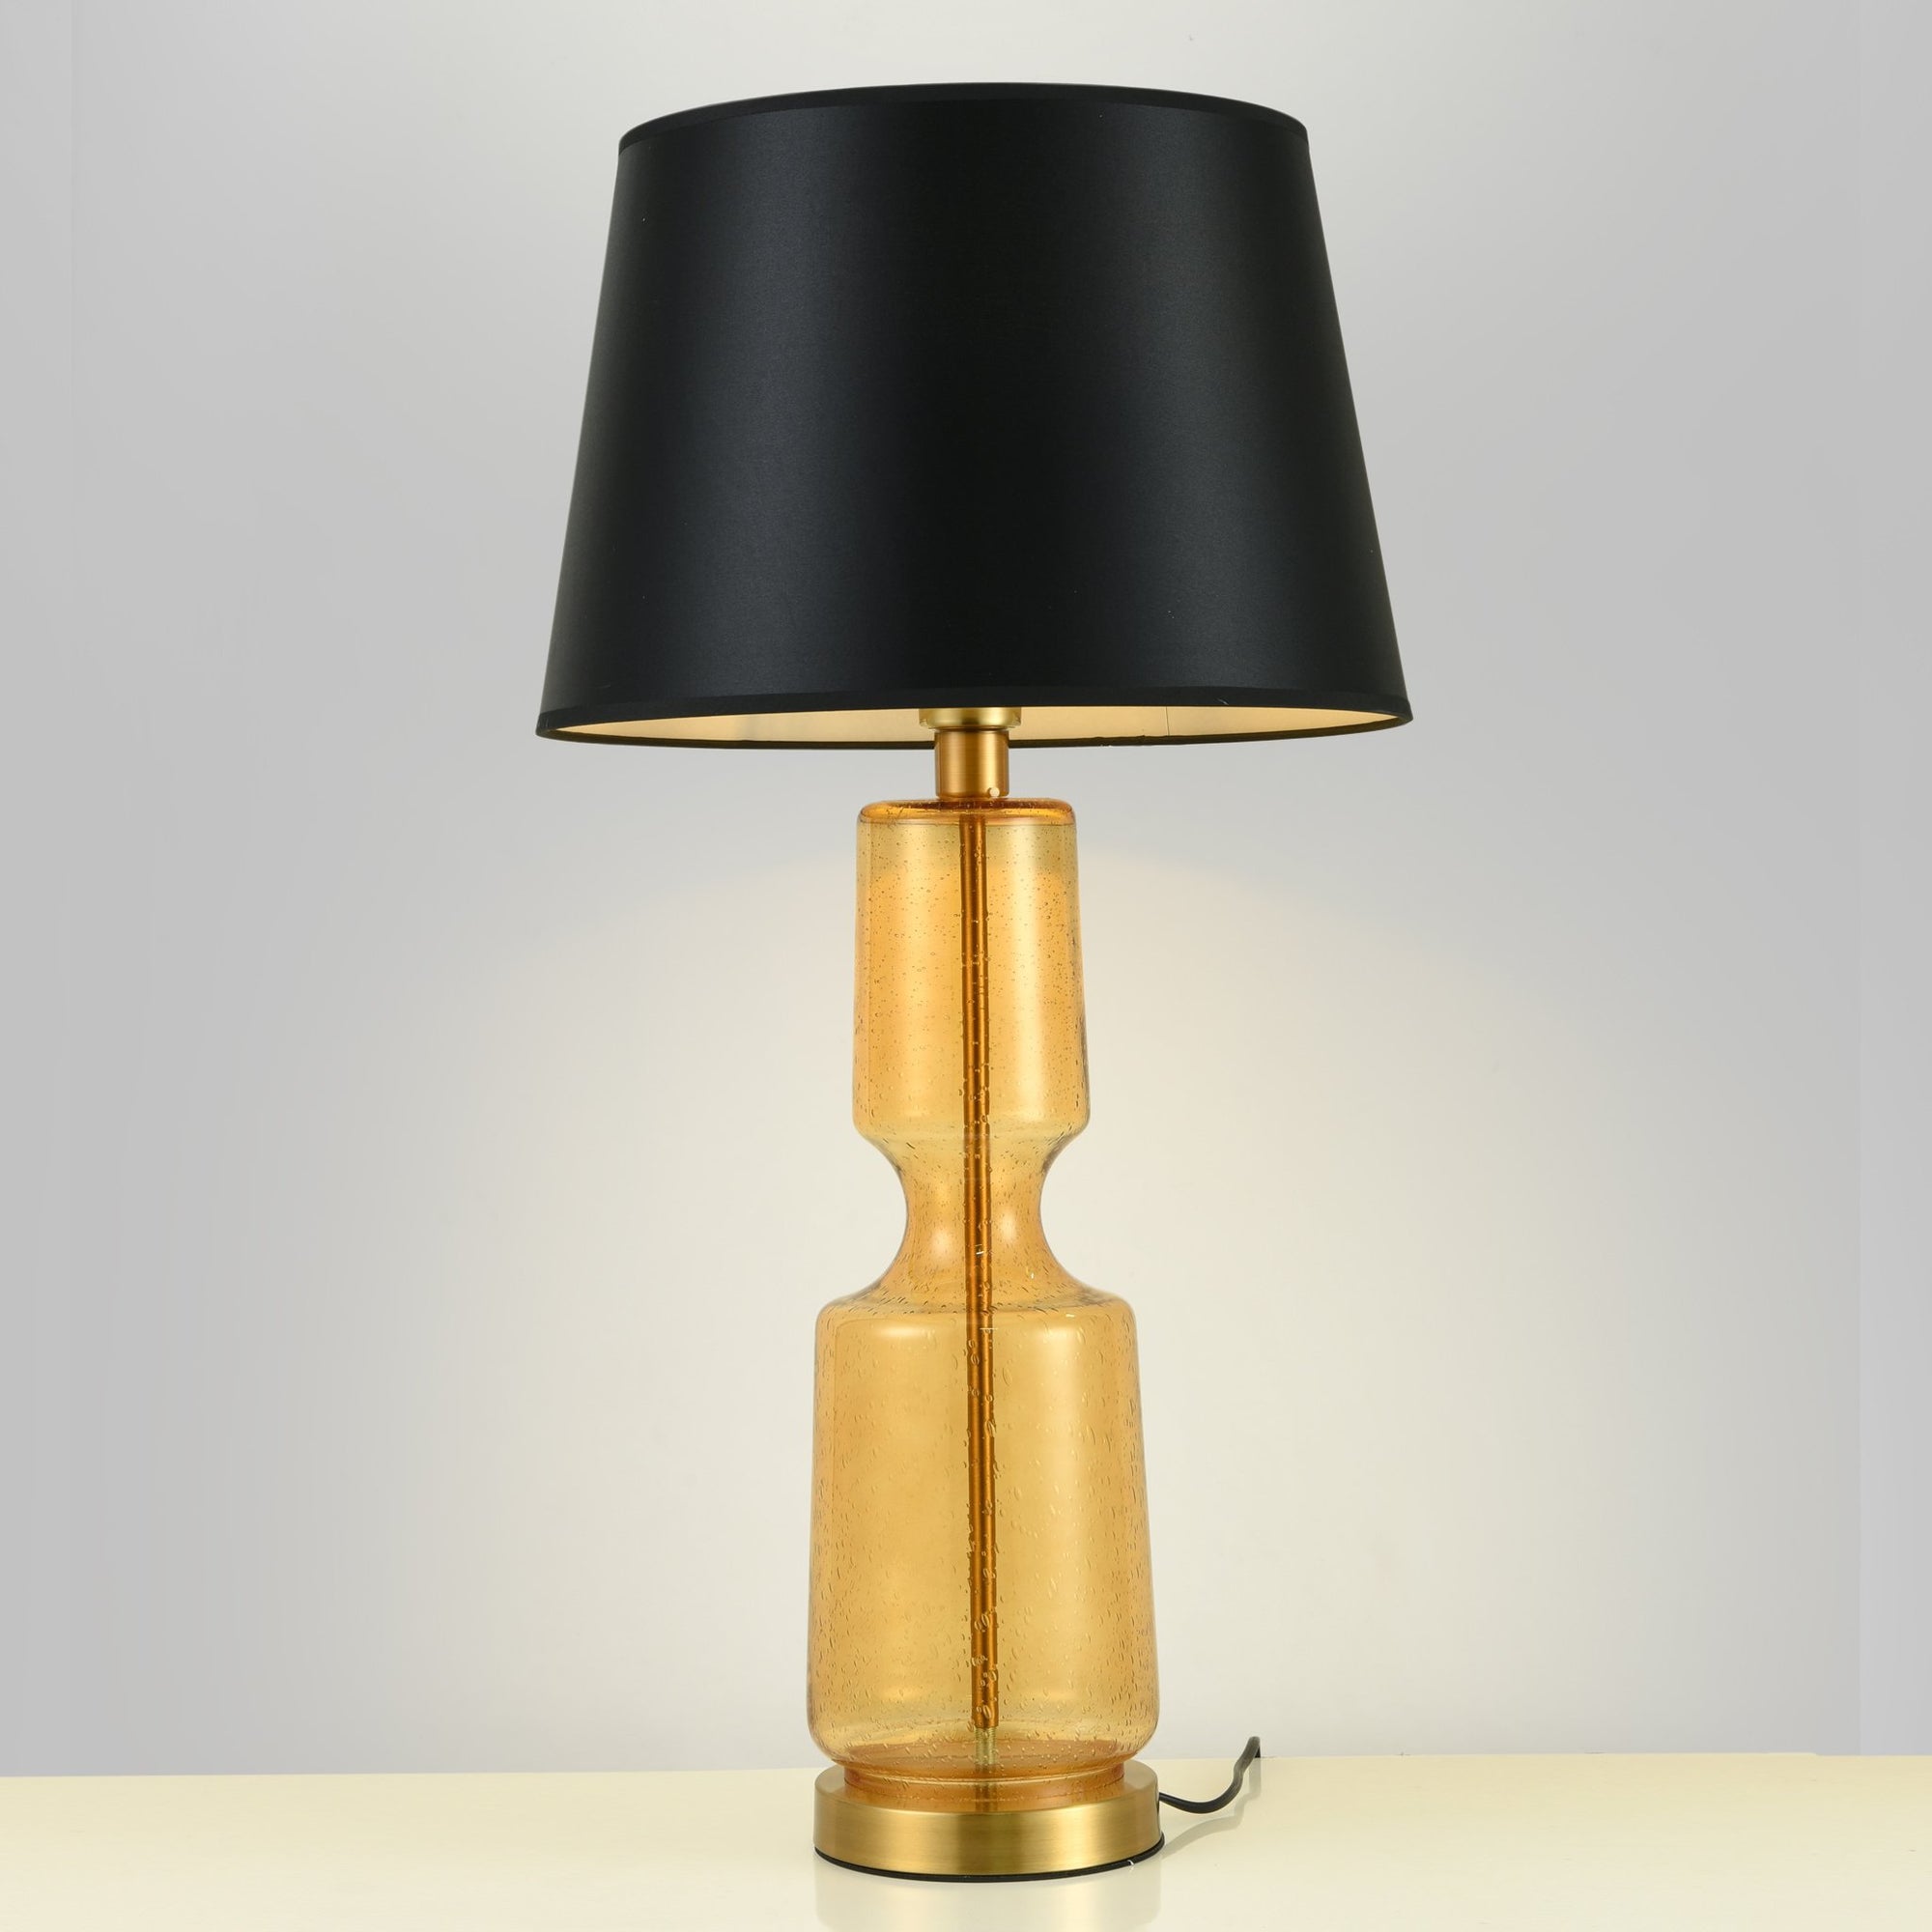 Buy President Table Lamp Online